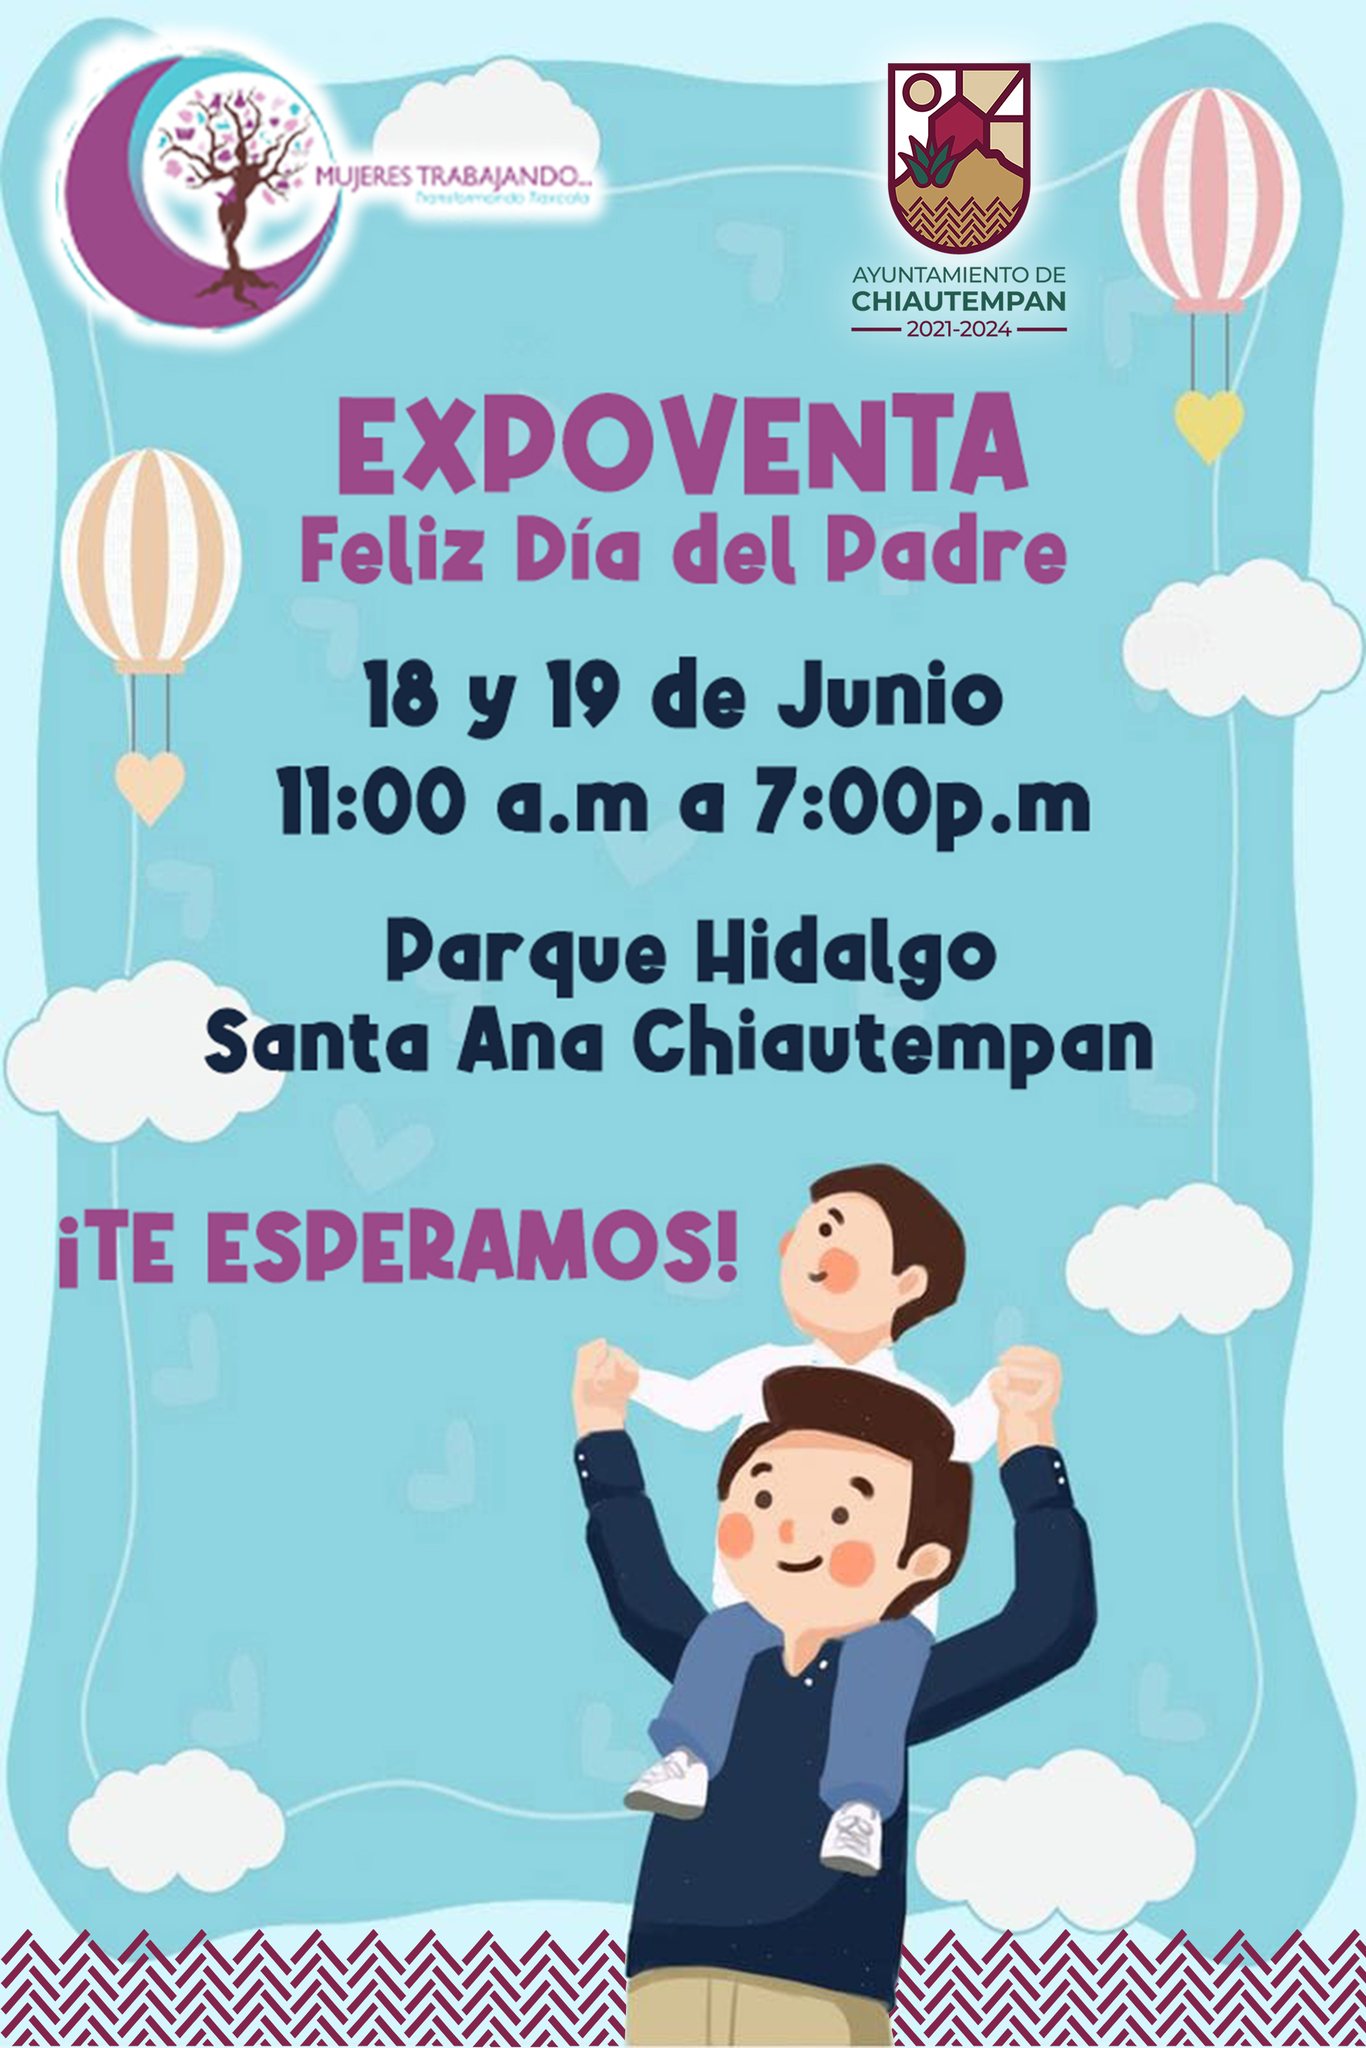 Expoventa «Feliz Día del Padre» en Chiautempan